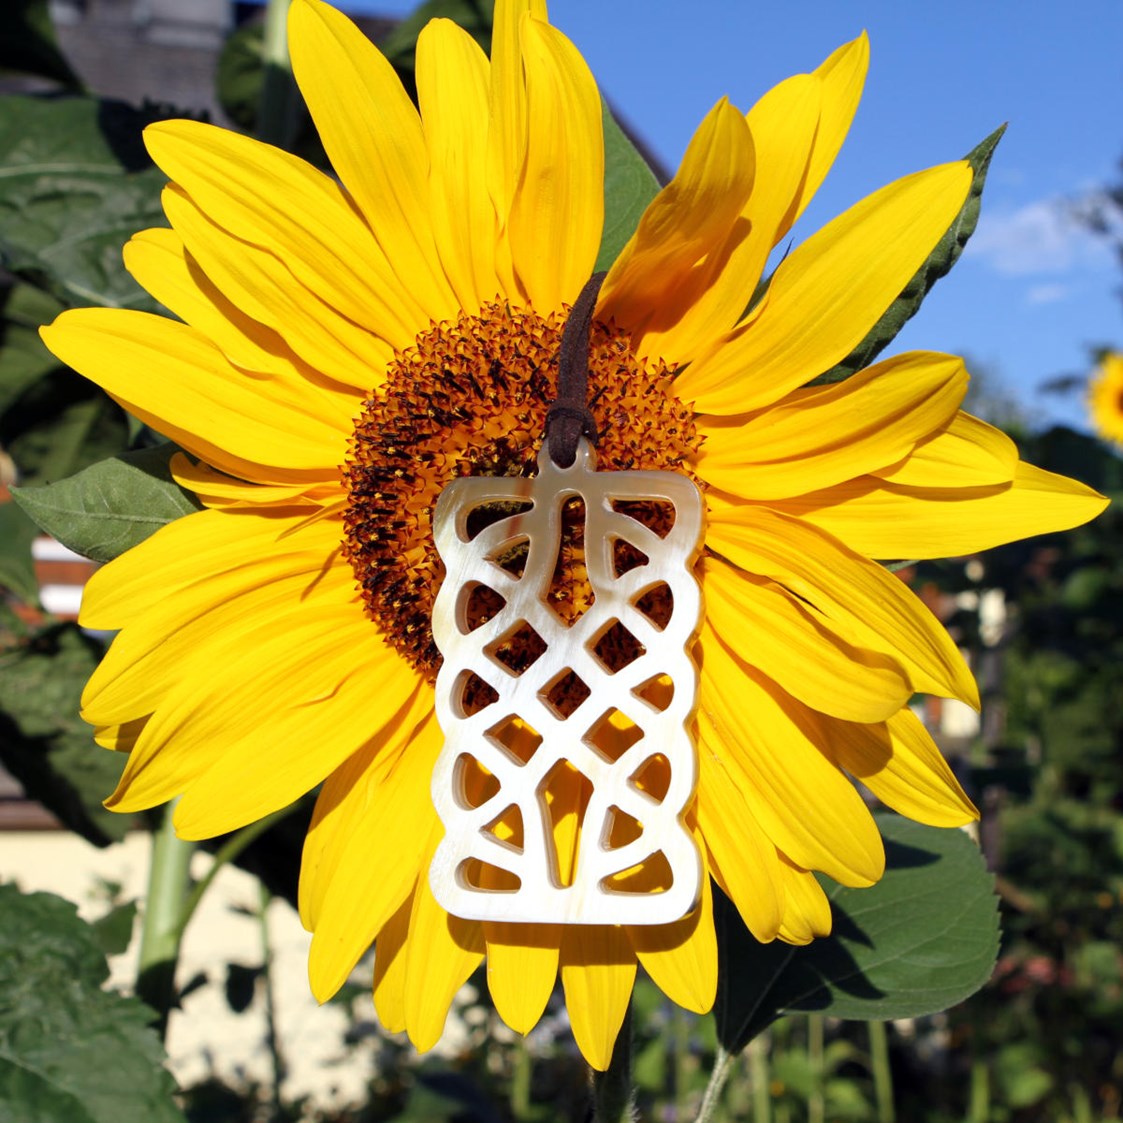 Unternehmen: Hornanhänger auf Sonnenblume - Avanova